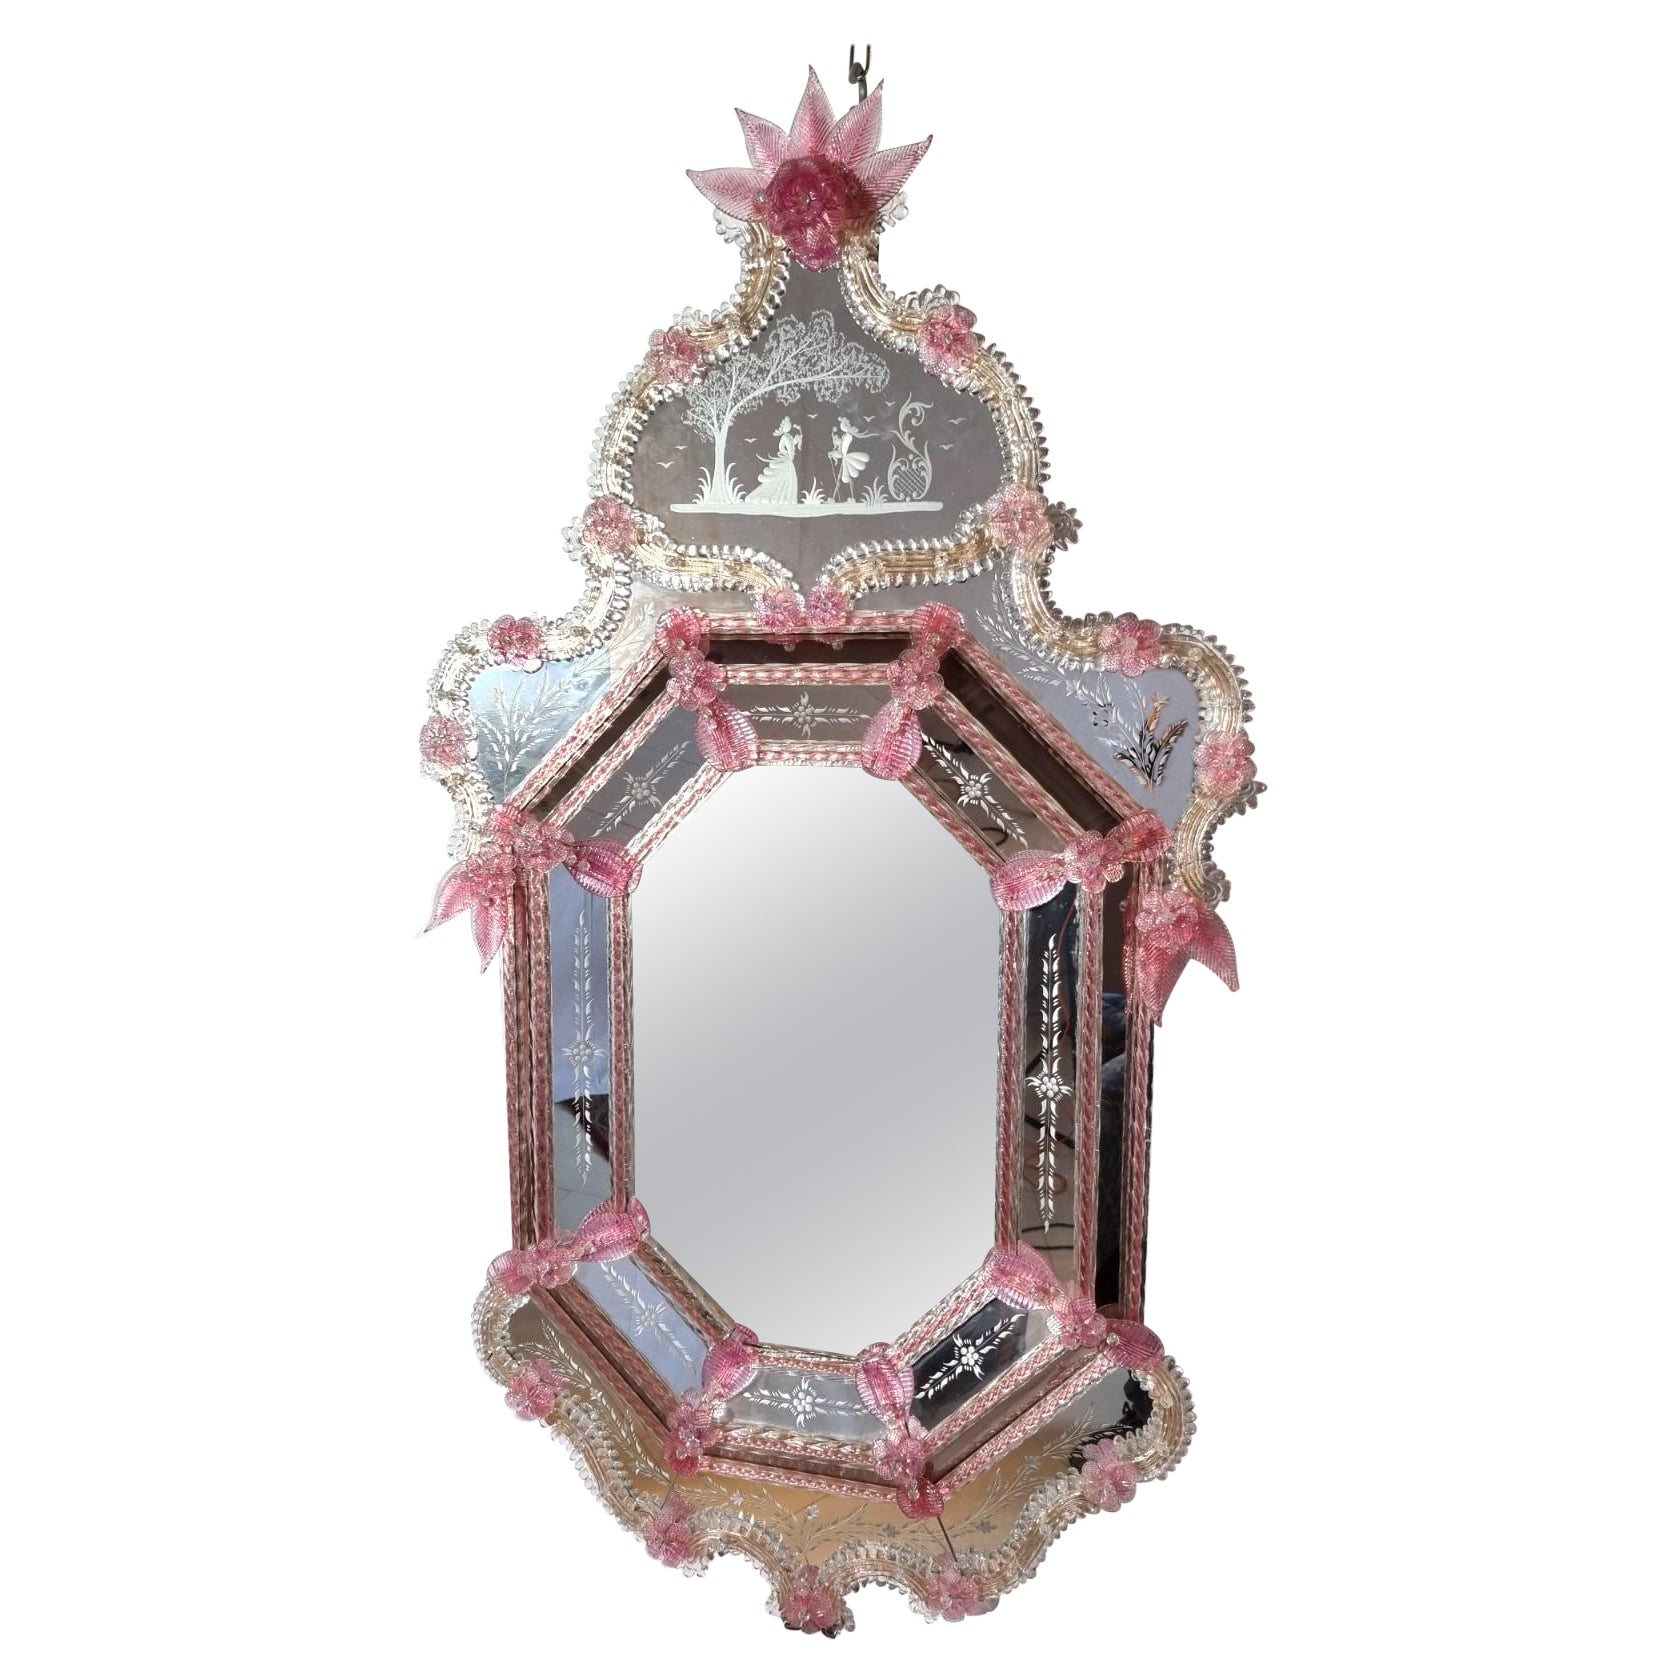 Spiegel aus venezianischem Muranoglas mit rosa Blume